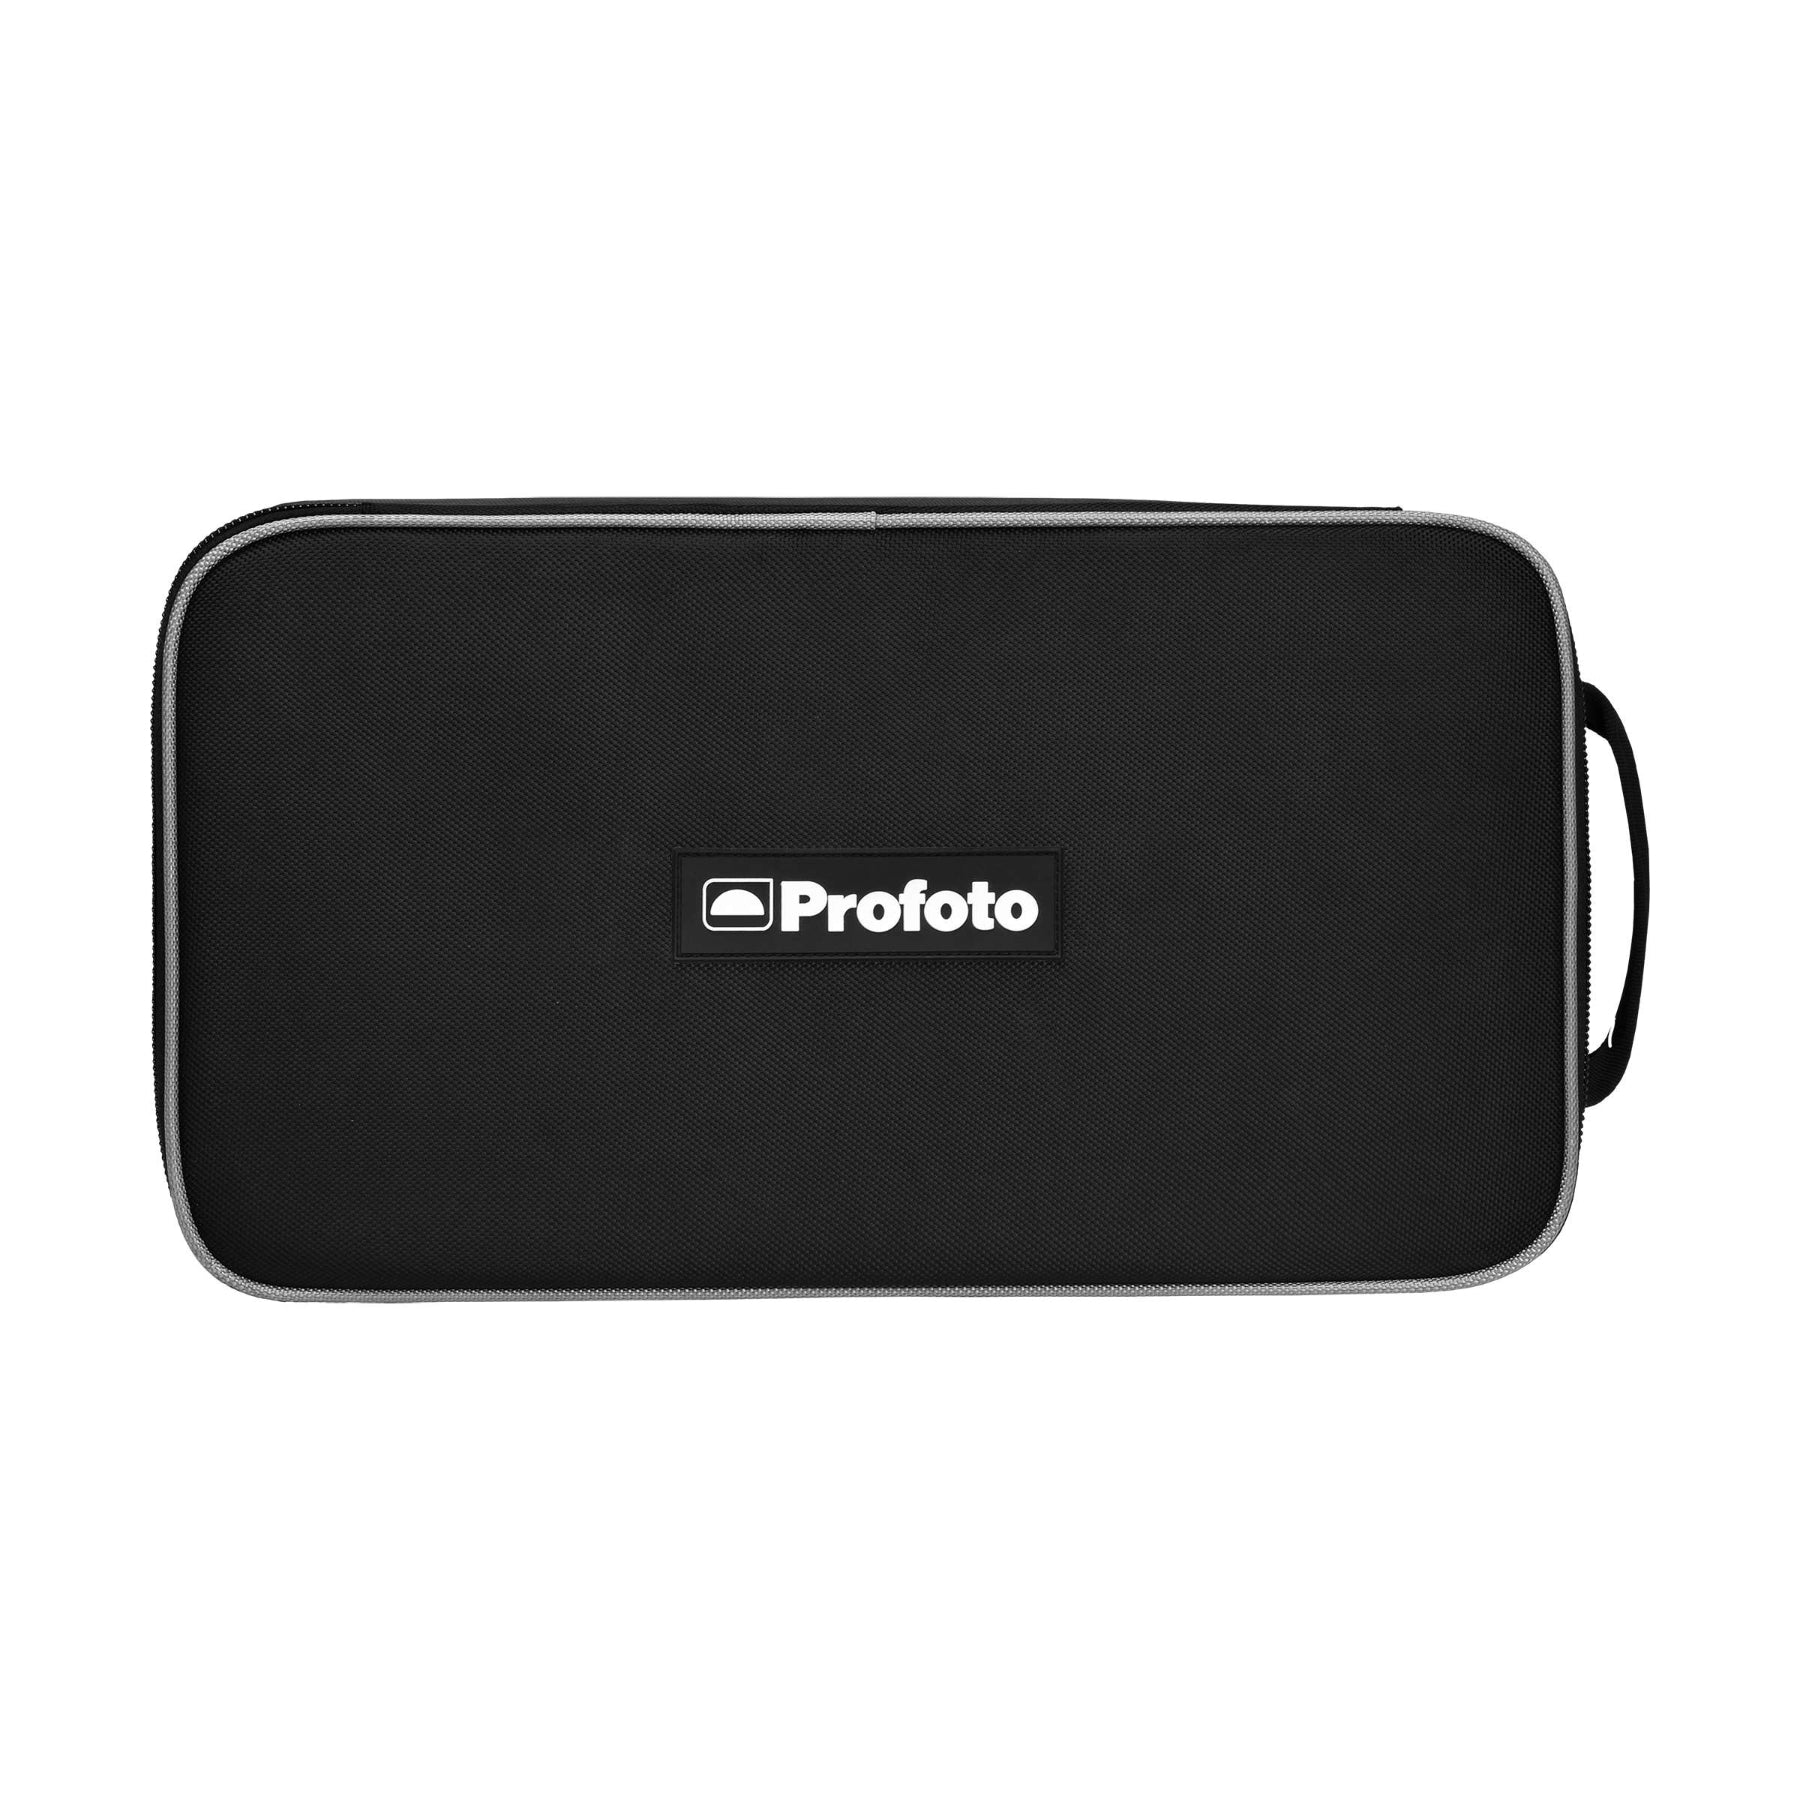 Buy Profoto Bag XS at Topic Store